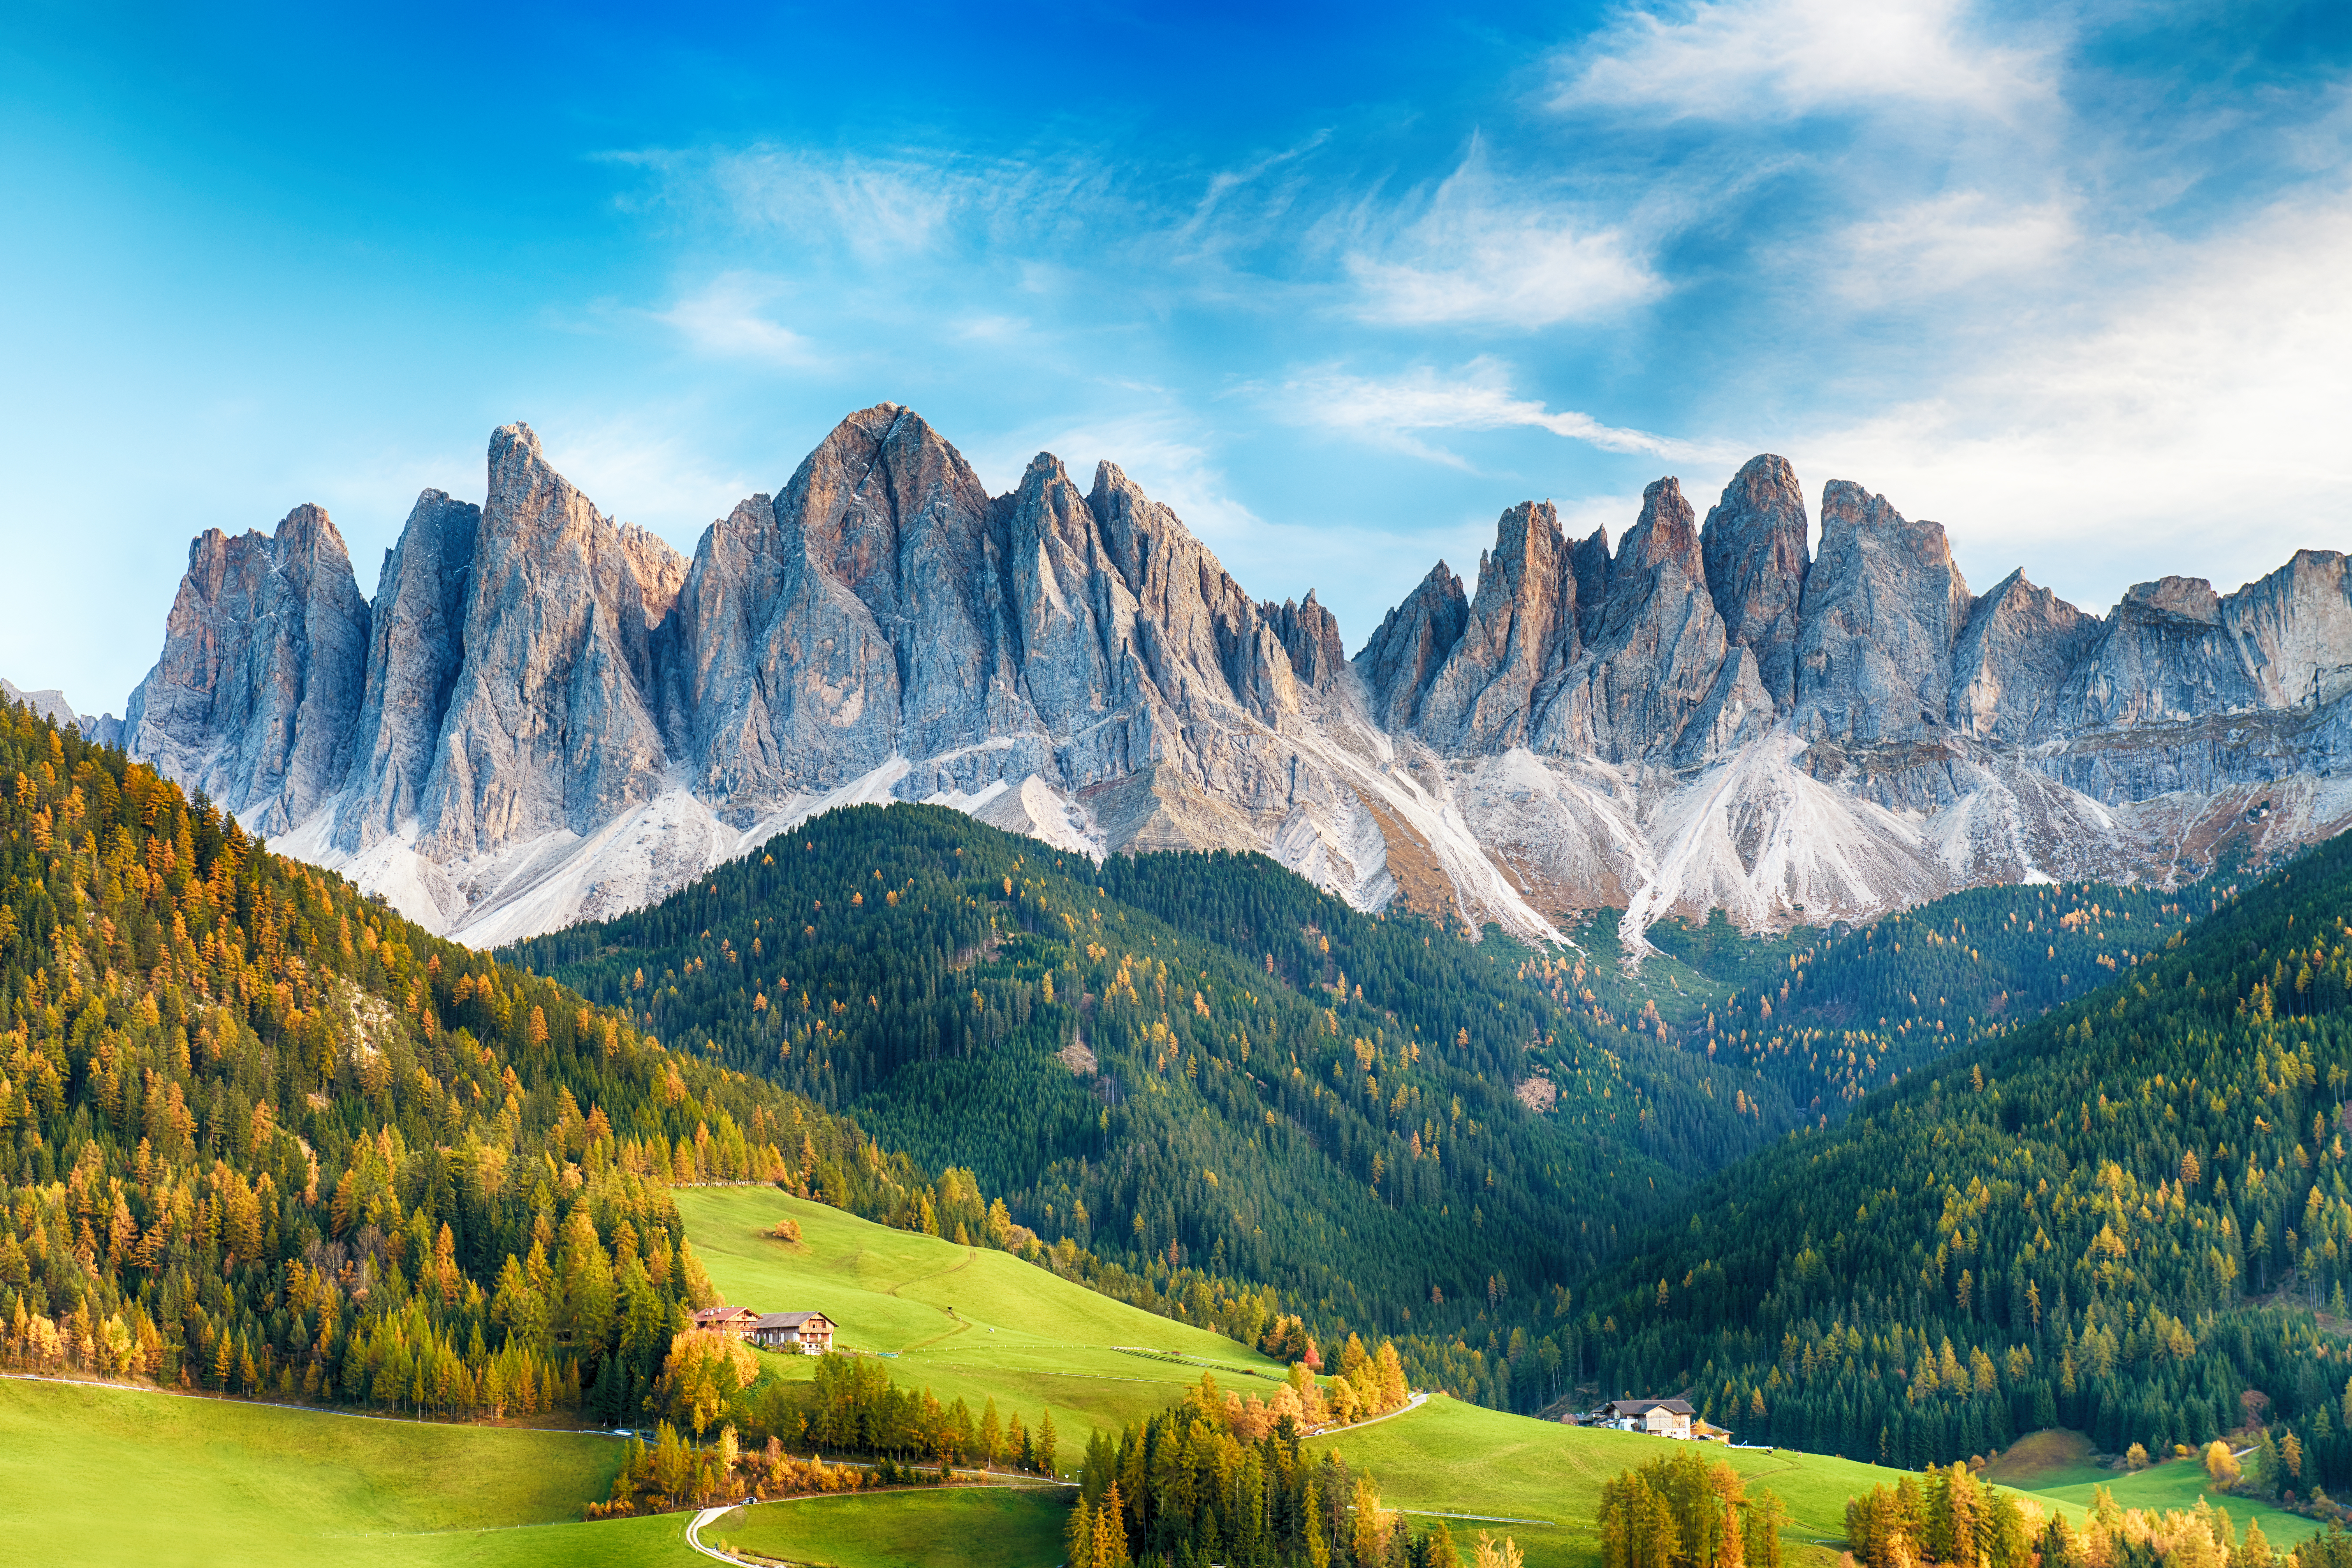 Zackige Felsformationen der Dolomiten ragen über grünen Hügeln mit Wäldern empor